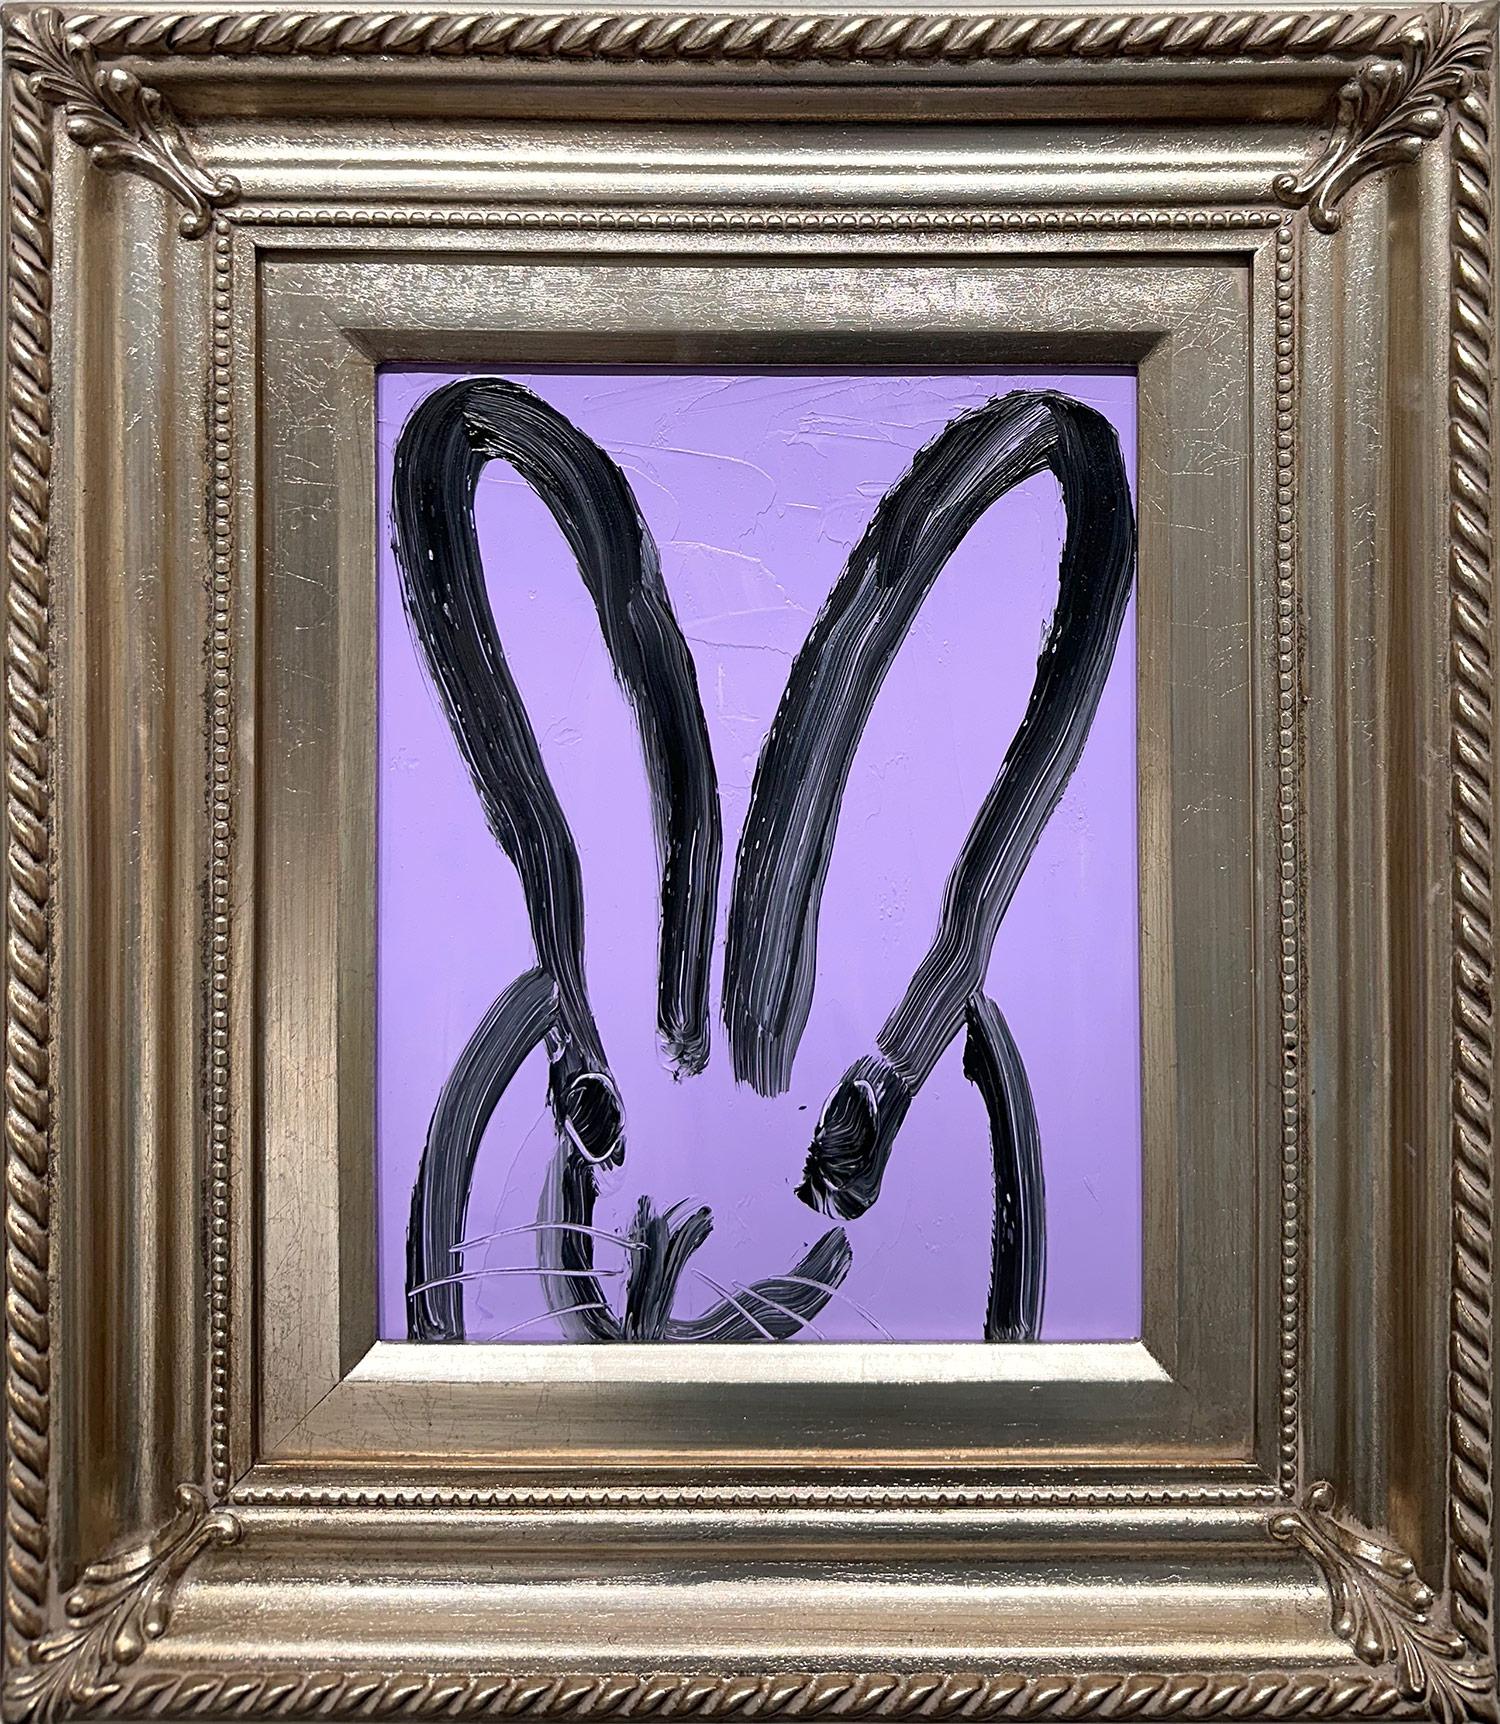 Hunt Slonem Animal Painting - "Mia" Black Bunny on Lavender Purple Background Oil Painting on Wood Panel